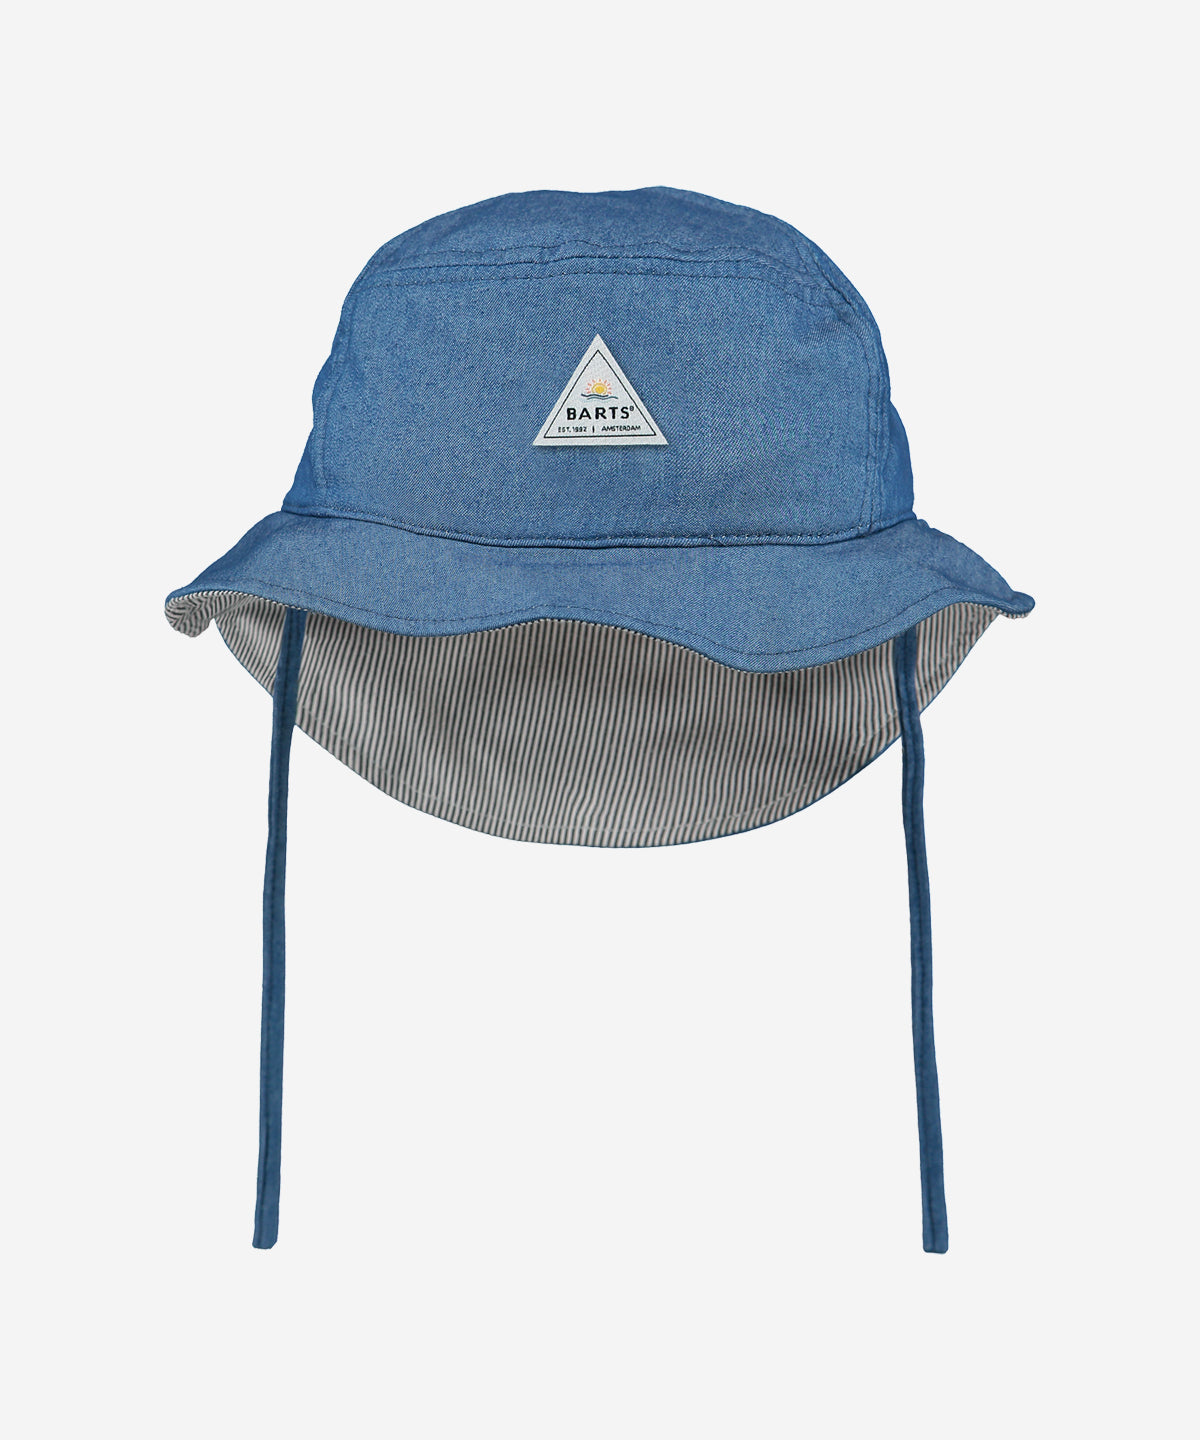 Lune Bucket Hat with Strings Blue Denim - 45 – Beetles & Bugs